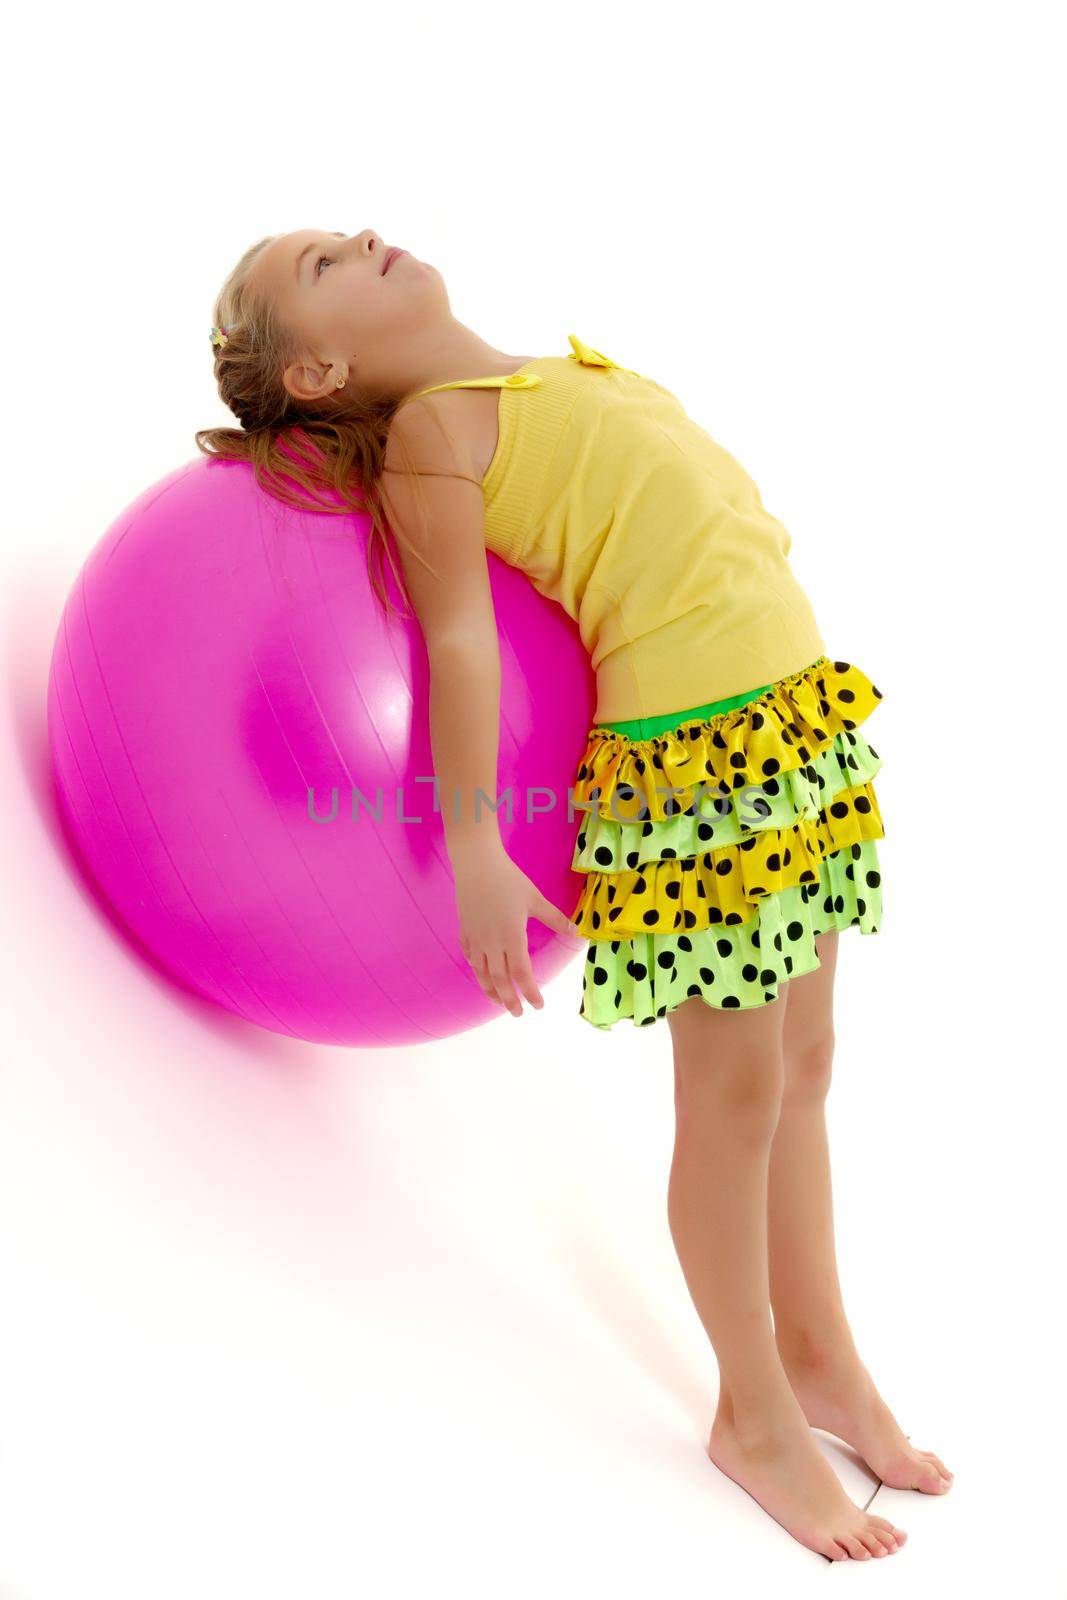 little girl doing exercises on a big ball for fitness. by kolesnikov_studio